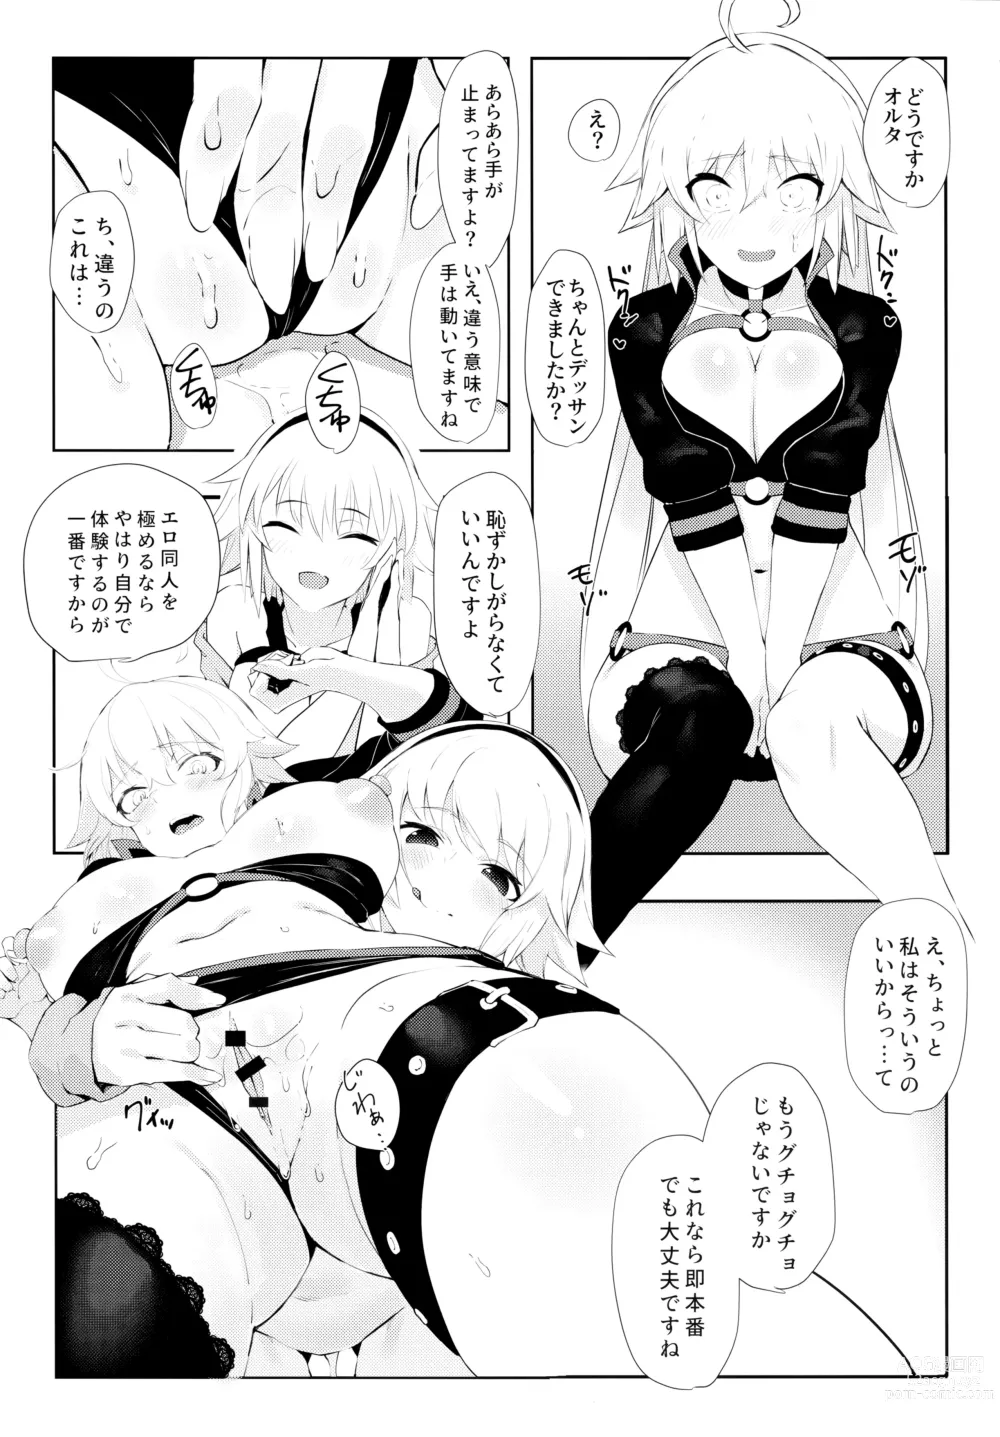 Page 12 of doujinshi Oshiete Jeanne Sensei! Ero Manga no Tsukurikata